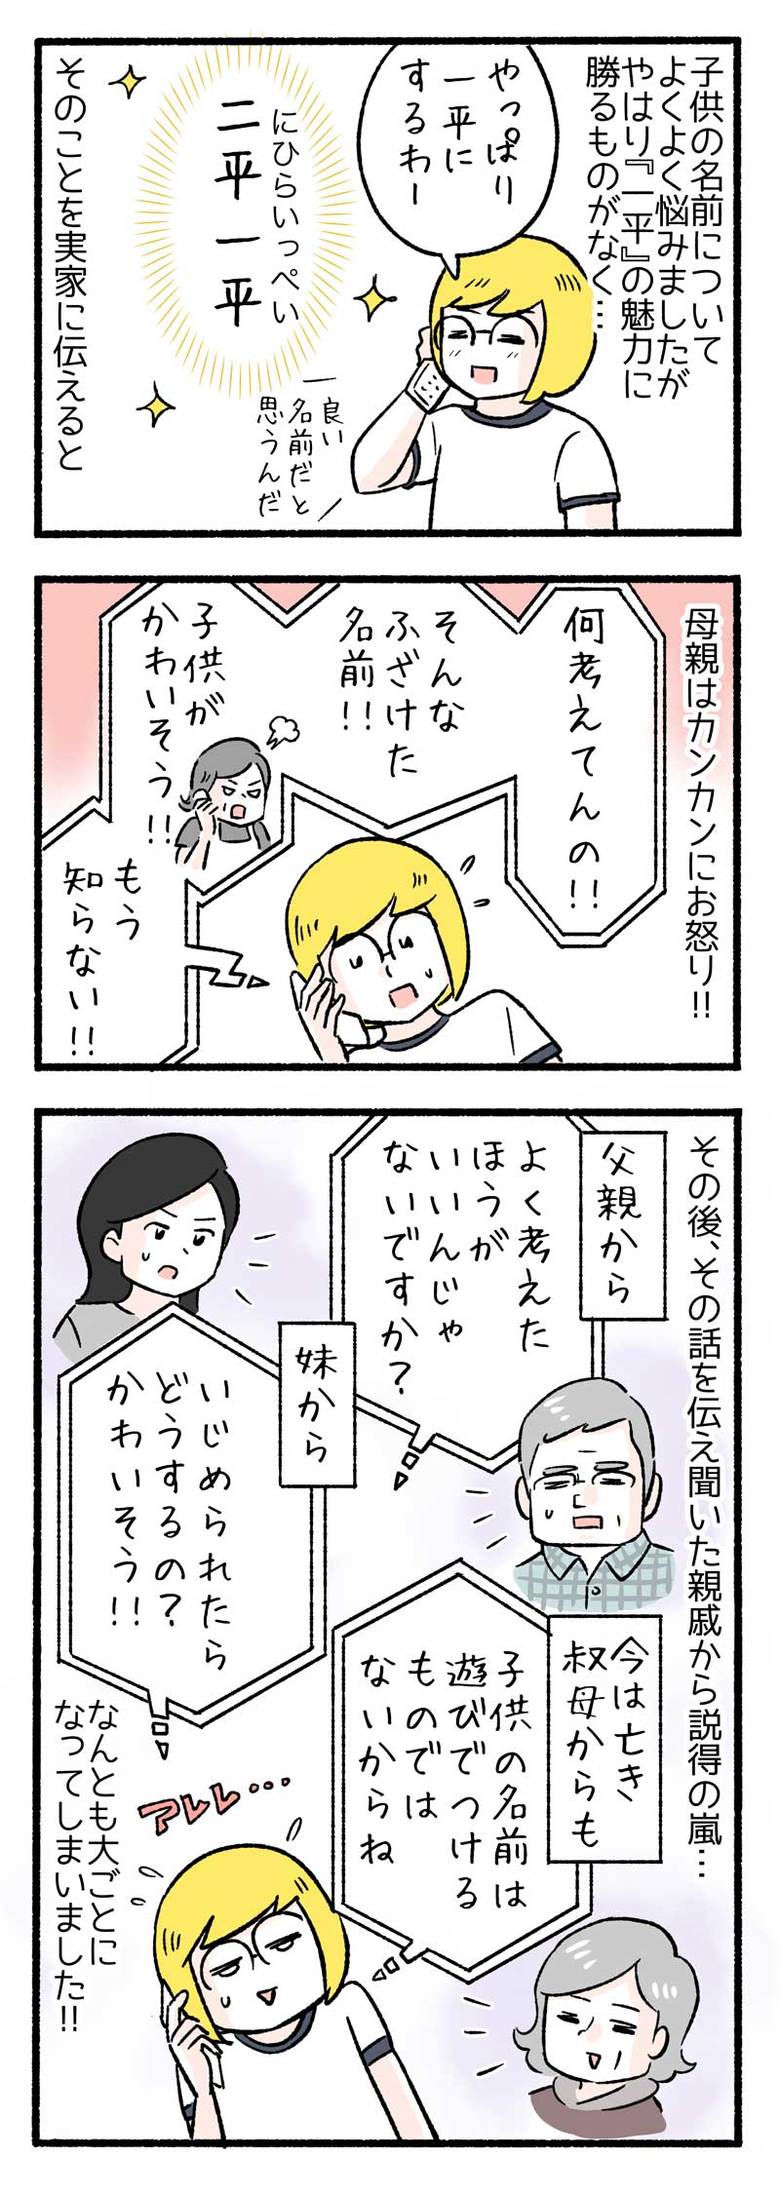 manga-nihipapa8-4